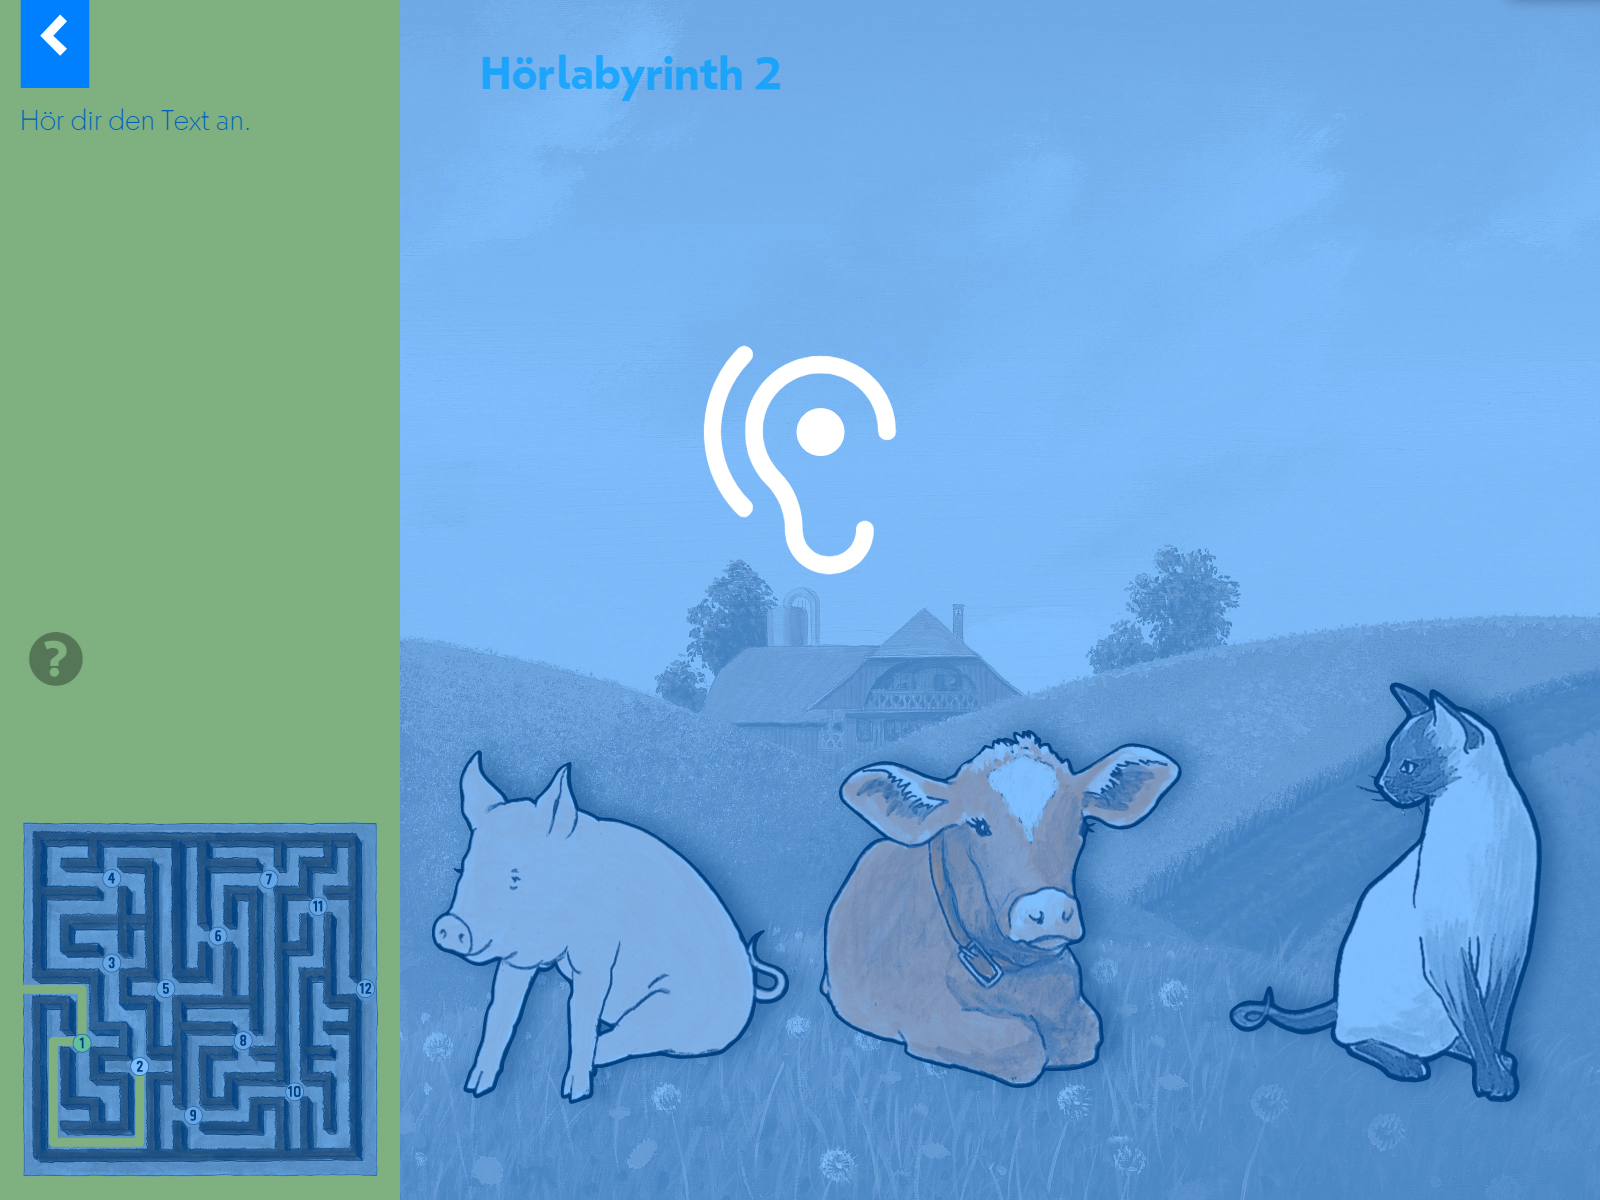 Hörlabyrinth: Tauche in die Geschichte ein und sammle dabei Figuren und Gegenstände